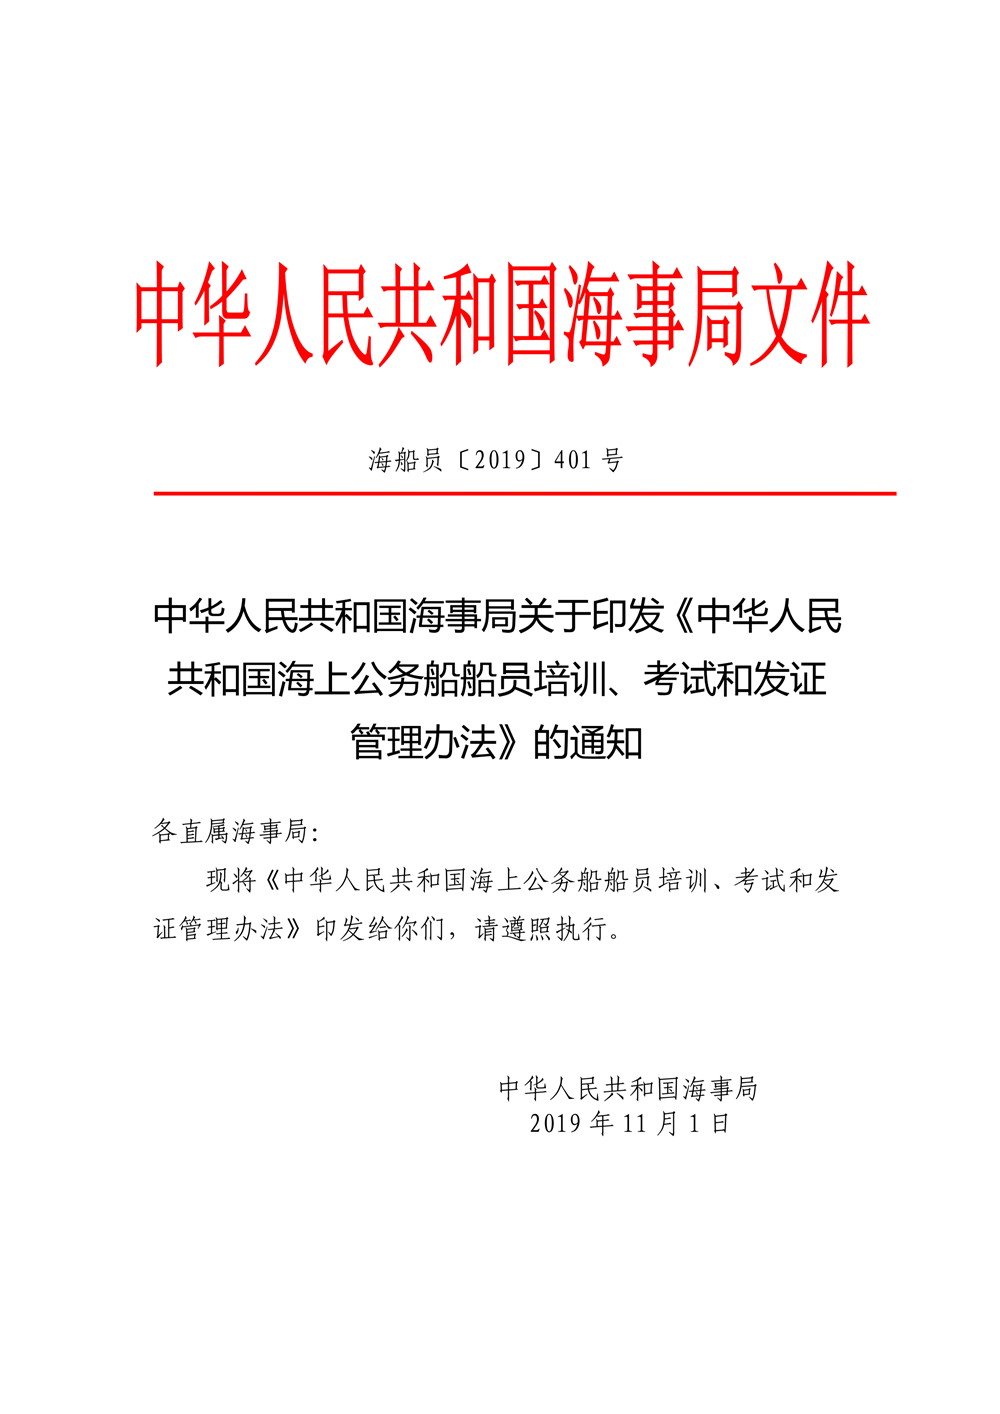 中华人民共和国海事局关于印发《中华人民共和国海上公务船船员培训、考试和